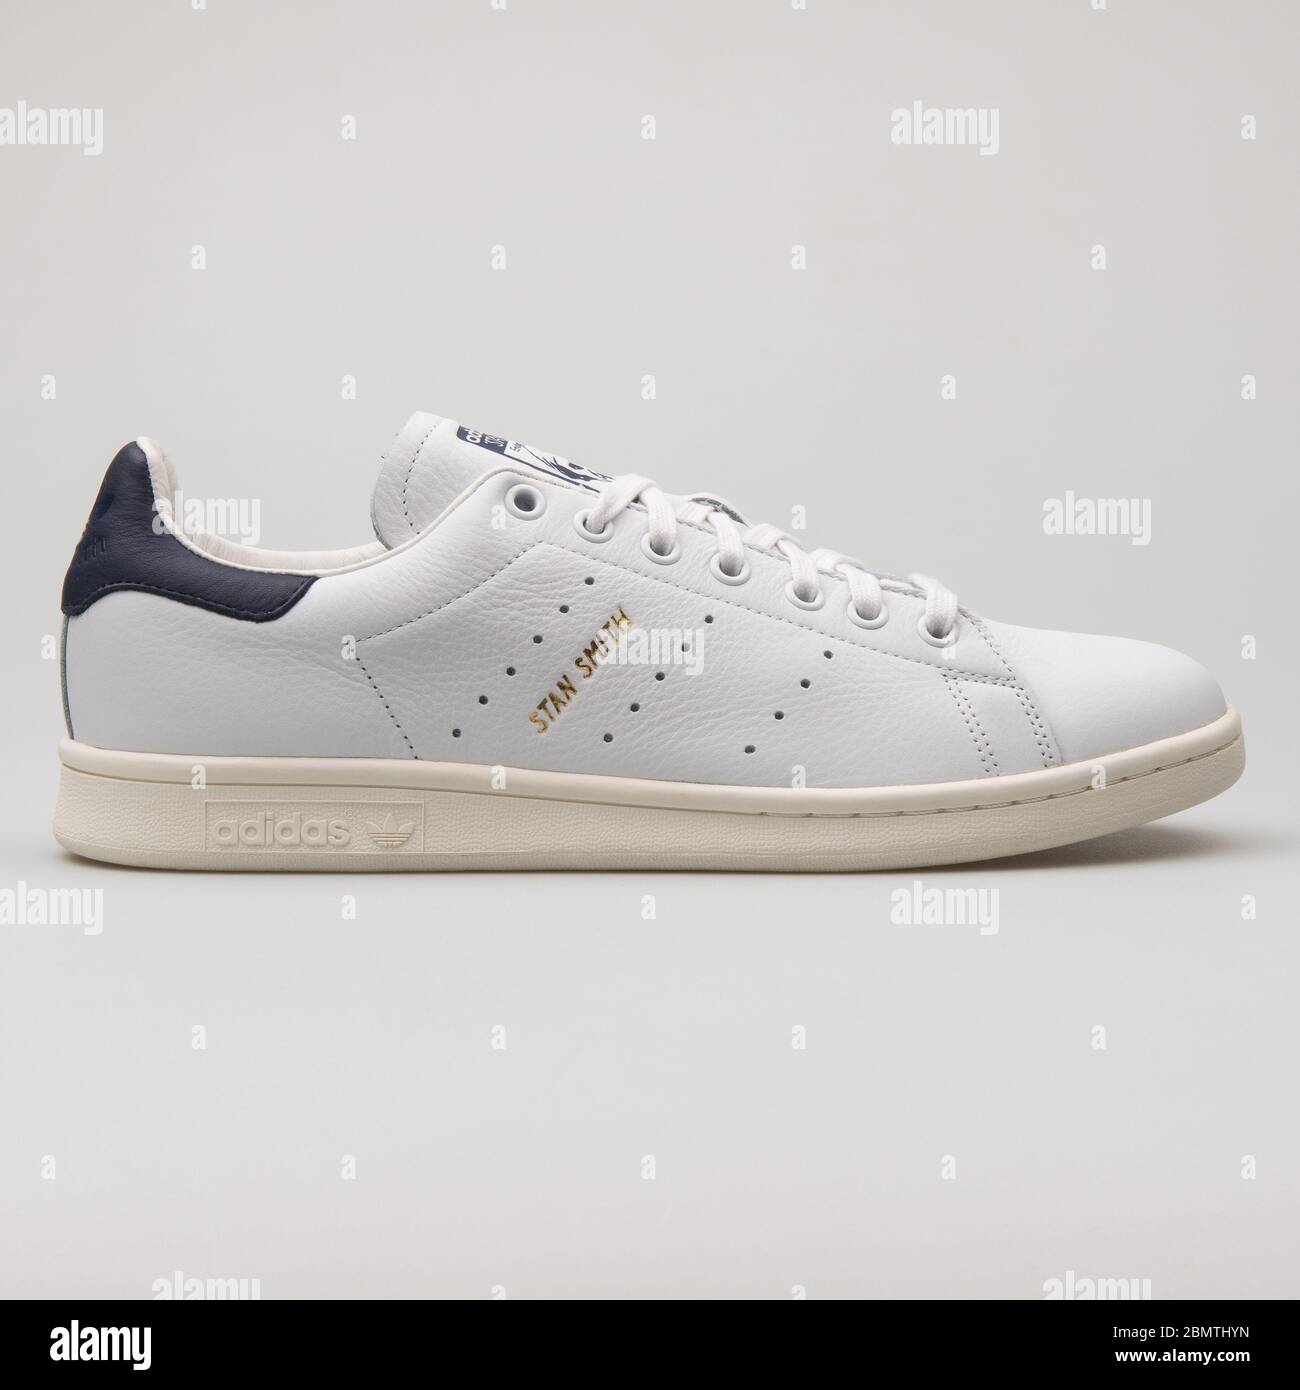 VIENNA, AUSTRIA - FEBRUARY 14, 2018: Adidas Stan Smith white and navy blue  sneaker on white background Stock Photo - Alamy